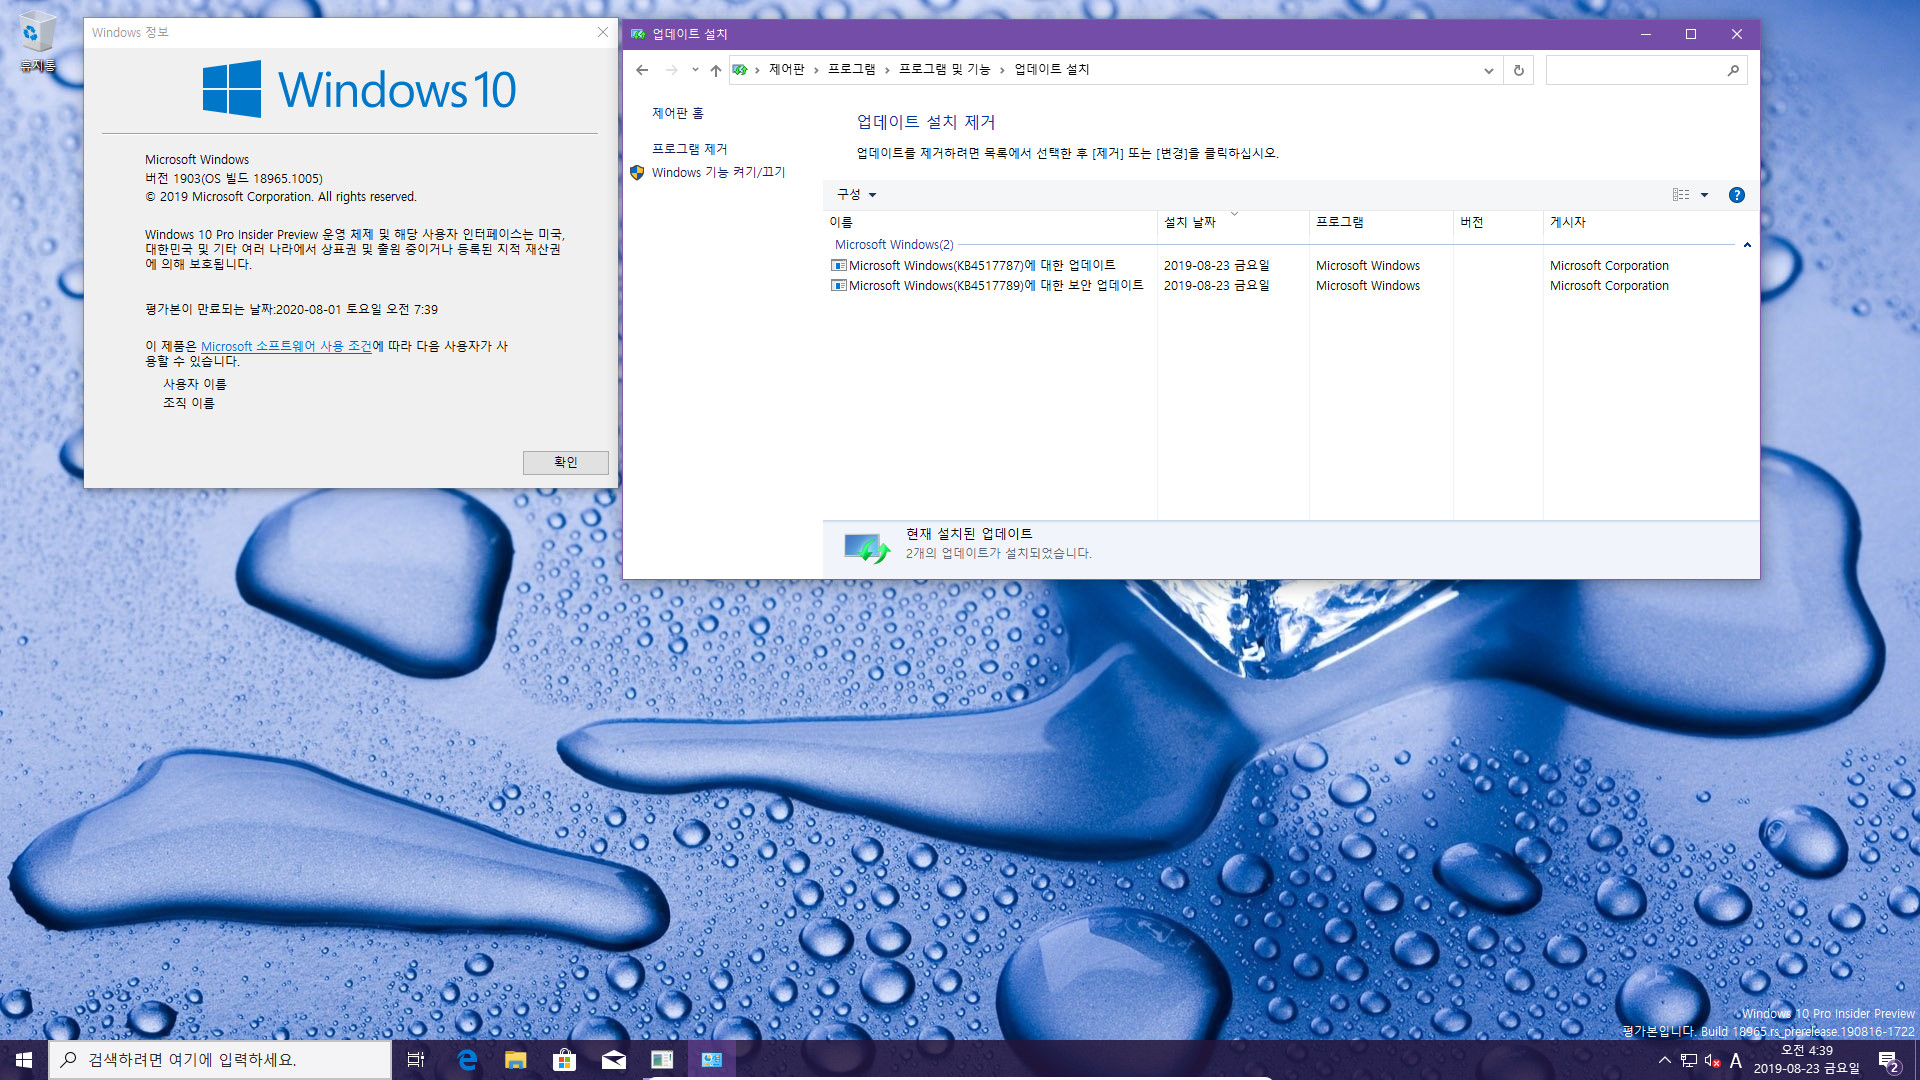 Windows 10 20H1 인사이더 프리뷰 KB4517787 누적 업데이트 (OS 빌드 18965.1005) [2019-08-22 일자] 나왔네요 - 설치 테스트 2019-08-23_043942.jpg